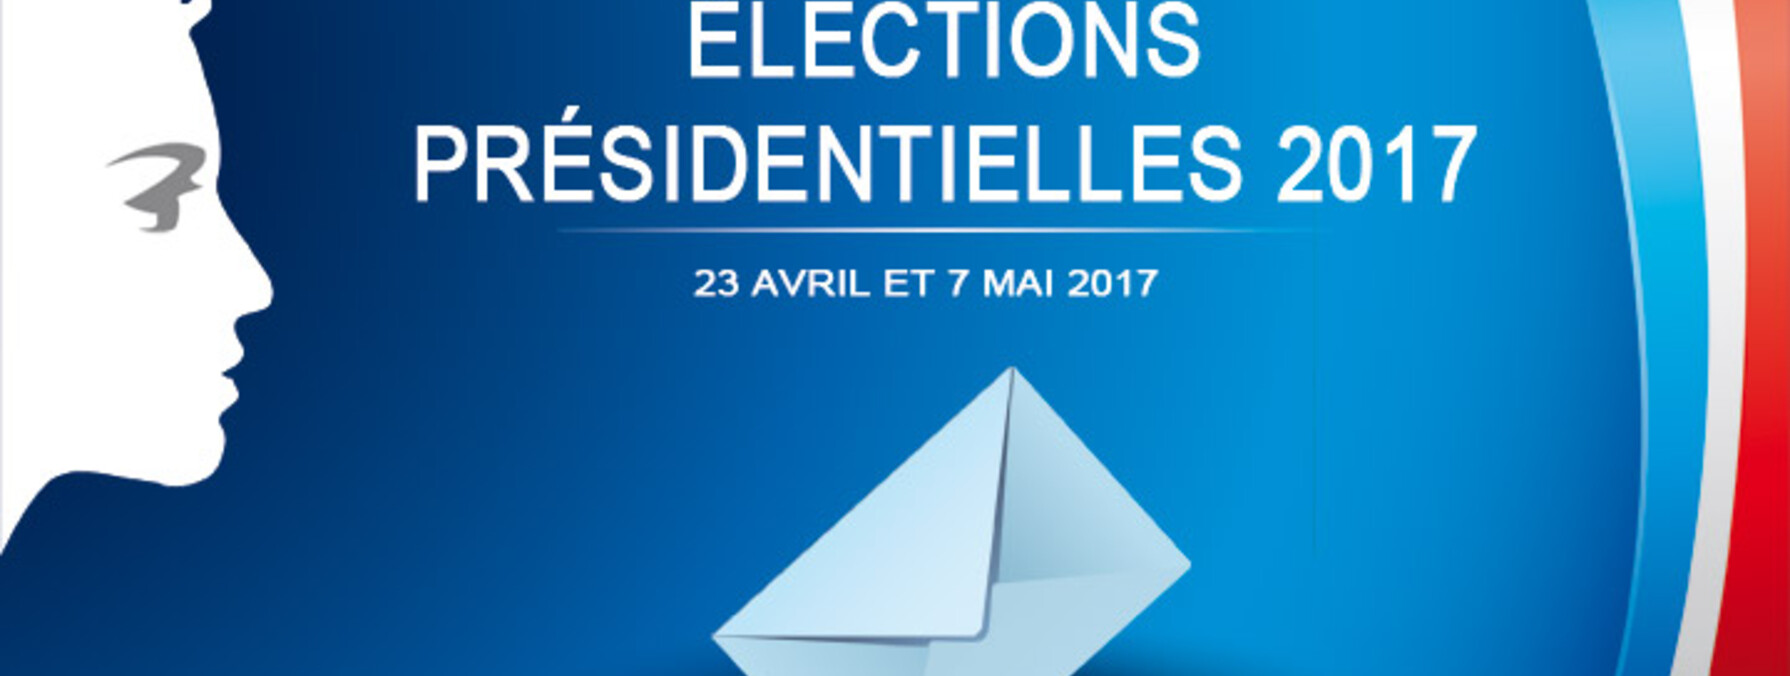 Elections présidentielles à Niort